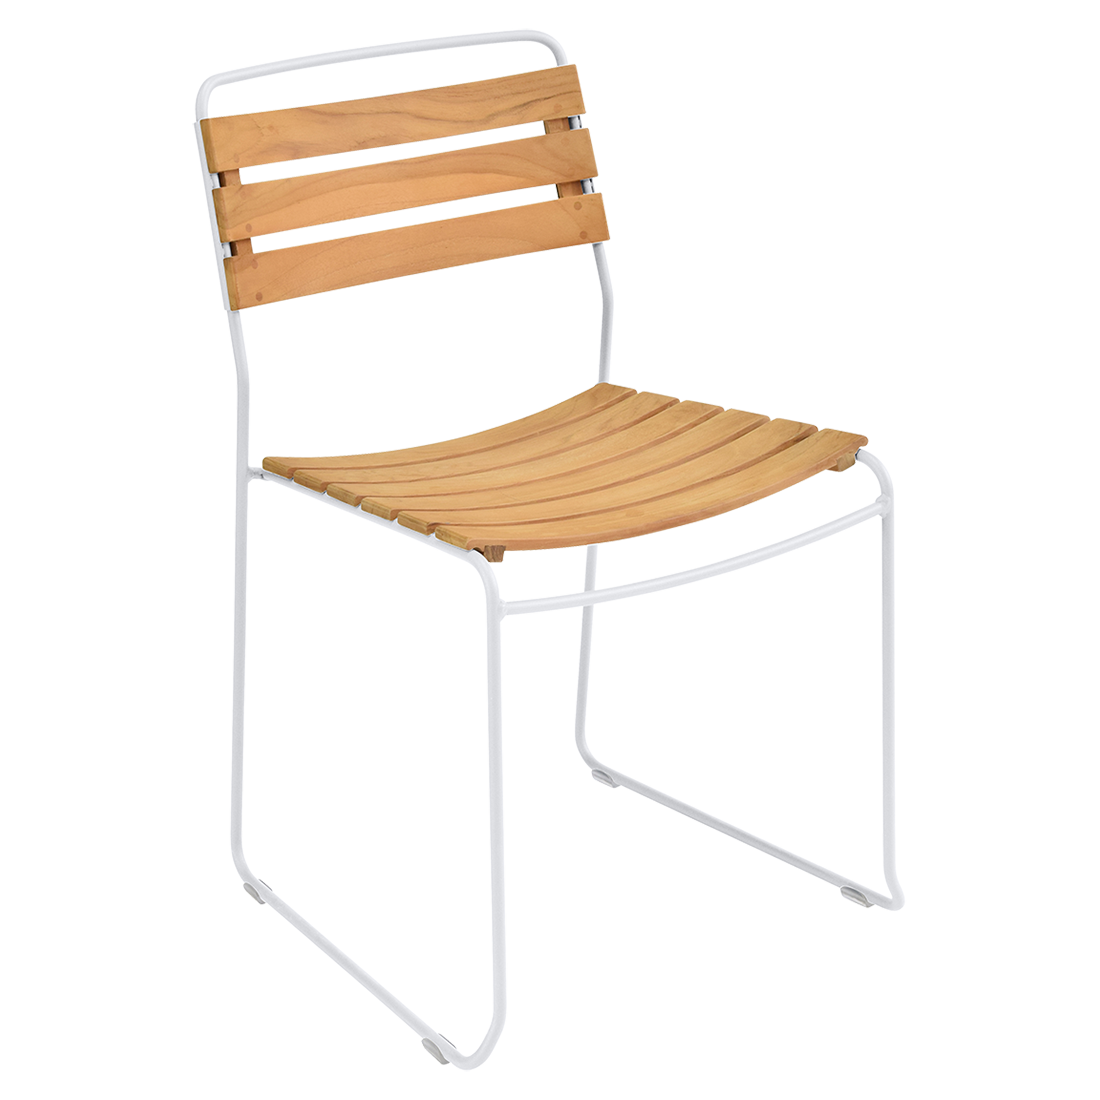 chaise surprising, chaise fermob, chaise bois et metal, chaise de jardin, chaise design, chaise bois et blanc, guggenbichler